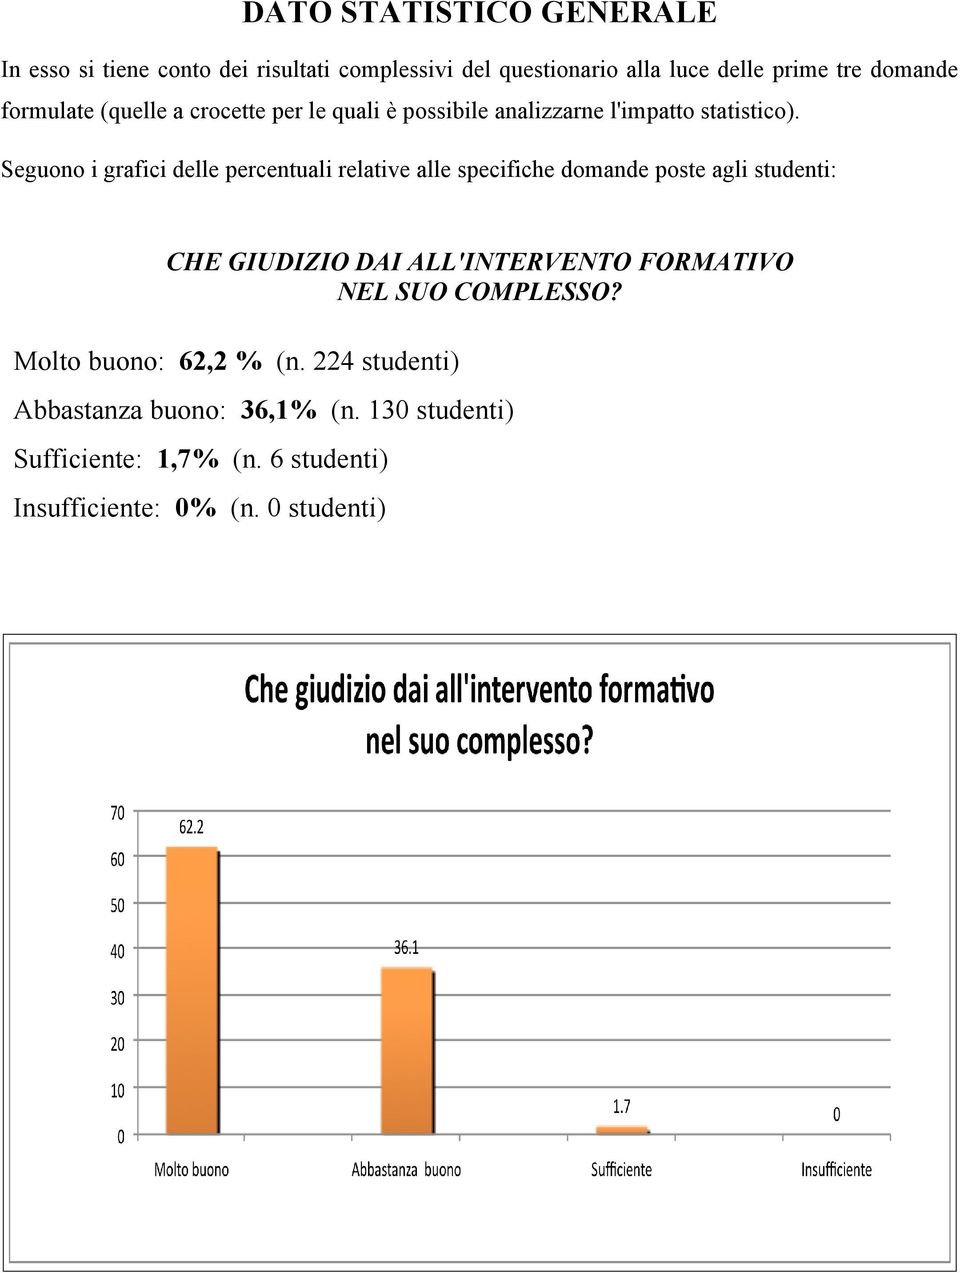 Seguono i grafici delle percentuali relative alle specifiche domande poste agli studenti: CHE GIUDIZIO DAI ALL'INTERVENTO